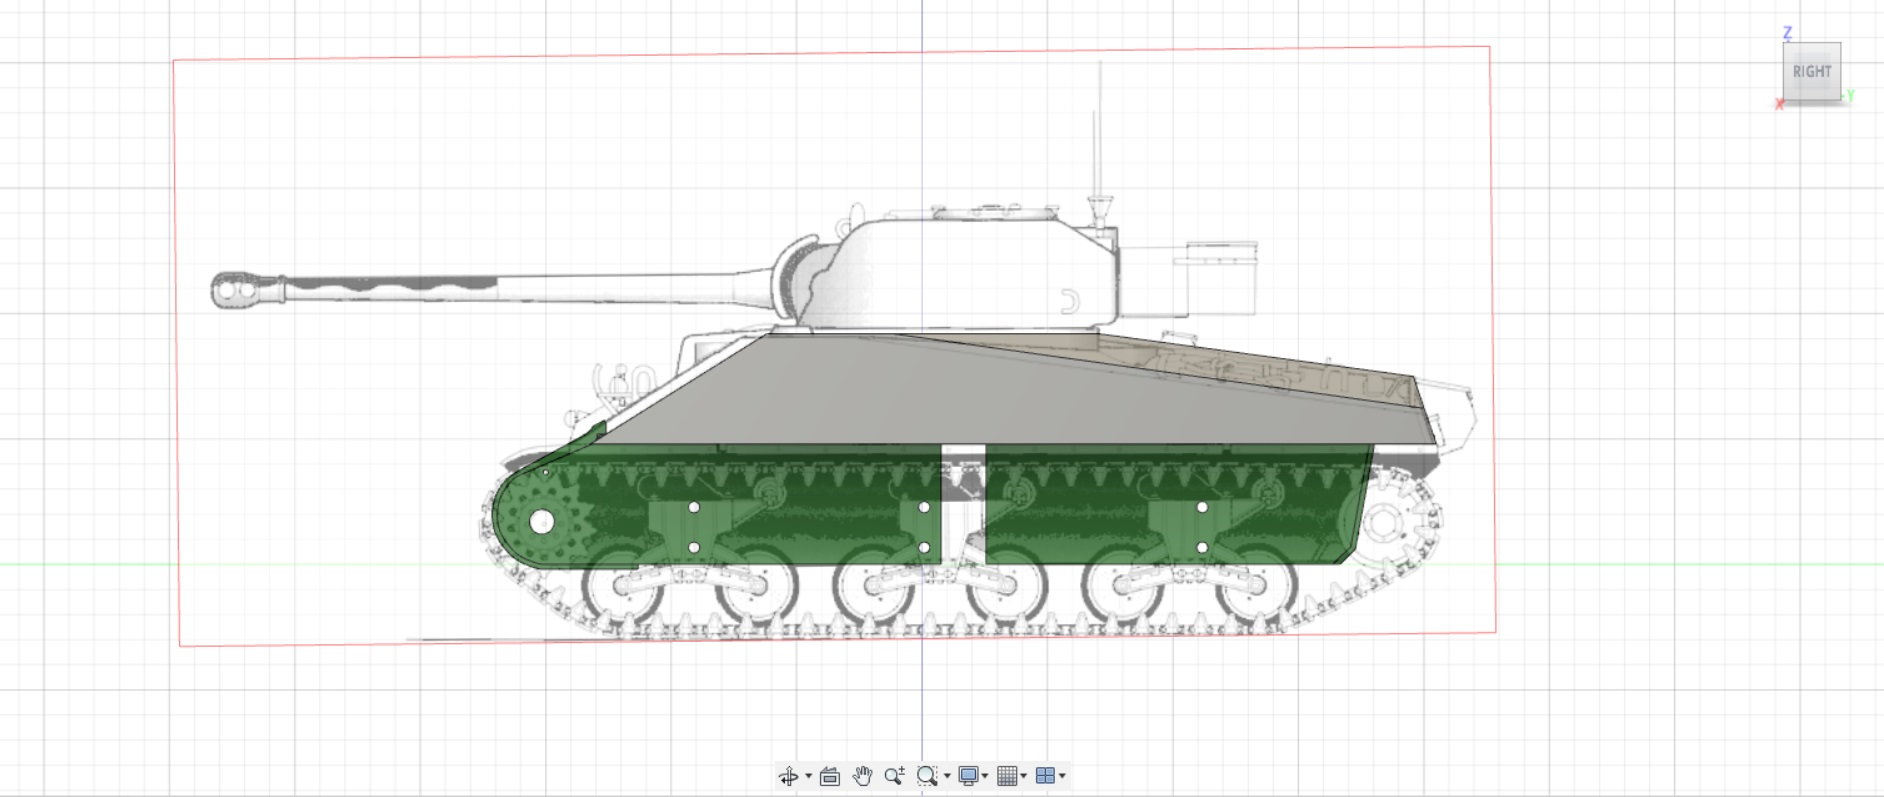 sherman tank blueprints